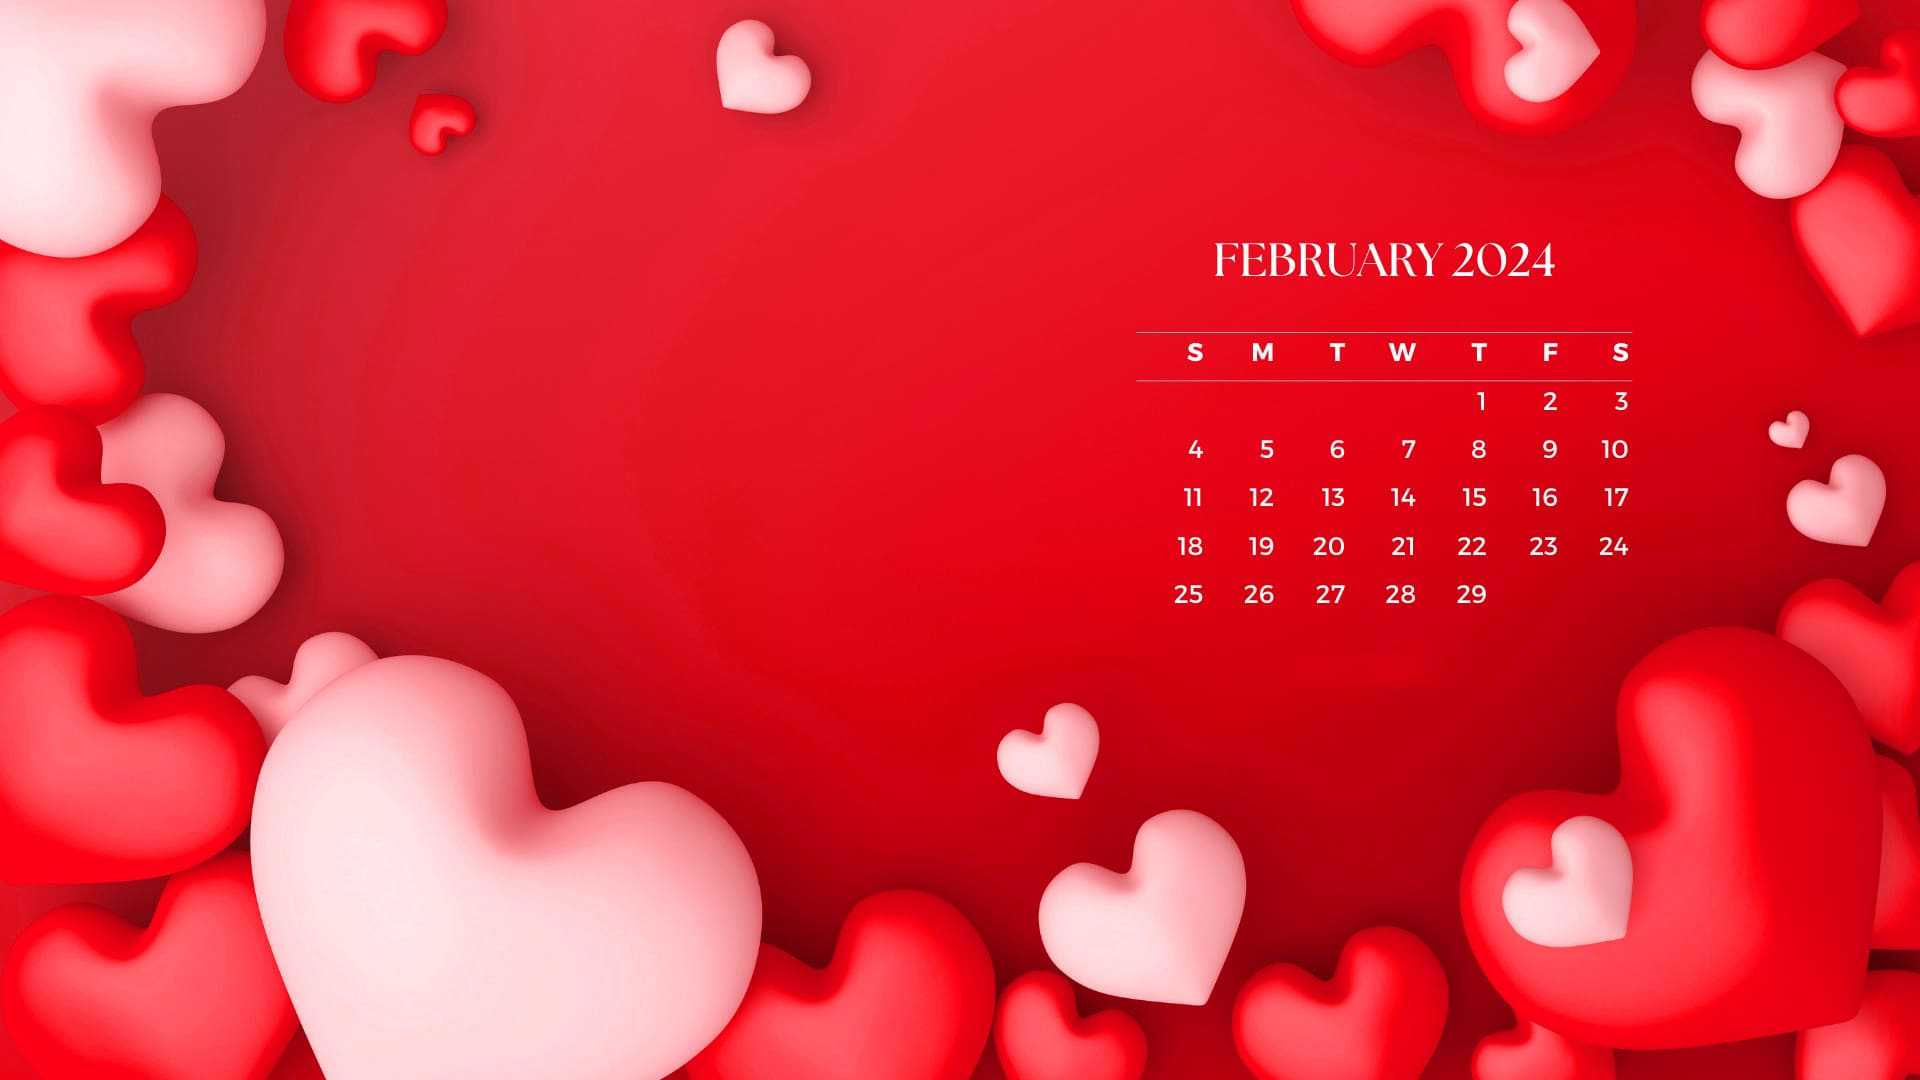 February 2024 Calendar Wallpaper iXpap